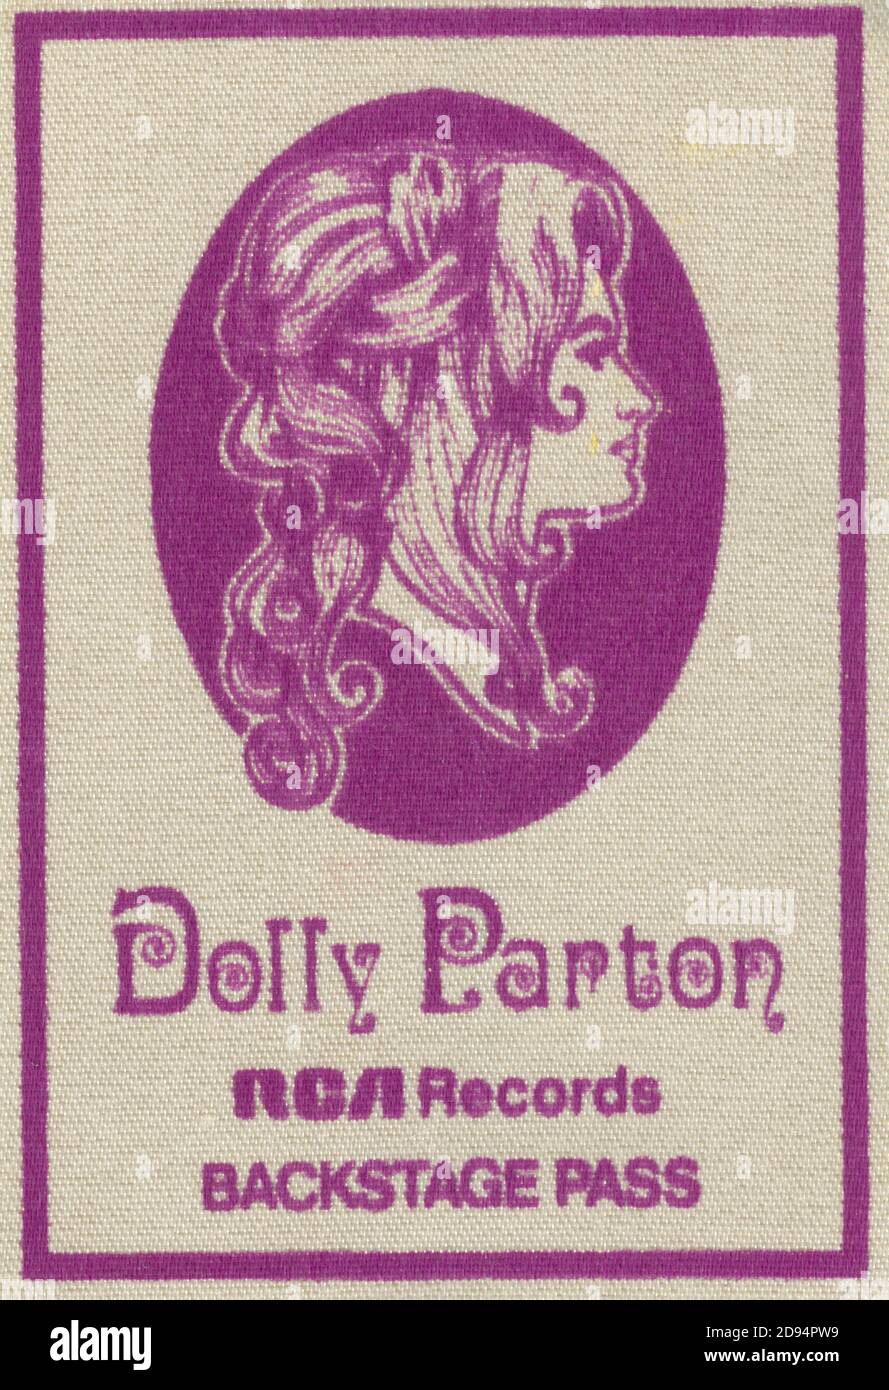 Dolly Parton Backstage Pass. Dies war vom 9. März 1977 Konzert in der Brown County Arena in Green Bay, Wisconsin, USA. In den meisten 1970er Jahren druckten die meisten Musikbands und Darsteller ihre eigenen Pässe nicht aus, sondern waren, wo immer sie spielten, auf den lokalen Veranstalter angewiesen, um Pässe und Sicherheit zu bieten. Um meine anderen Musik-bezogenen Vintage-Bilder zu sehen, Suche: Prestor vintage Musik Stockfoto